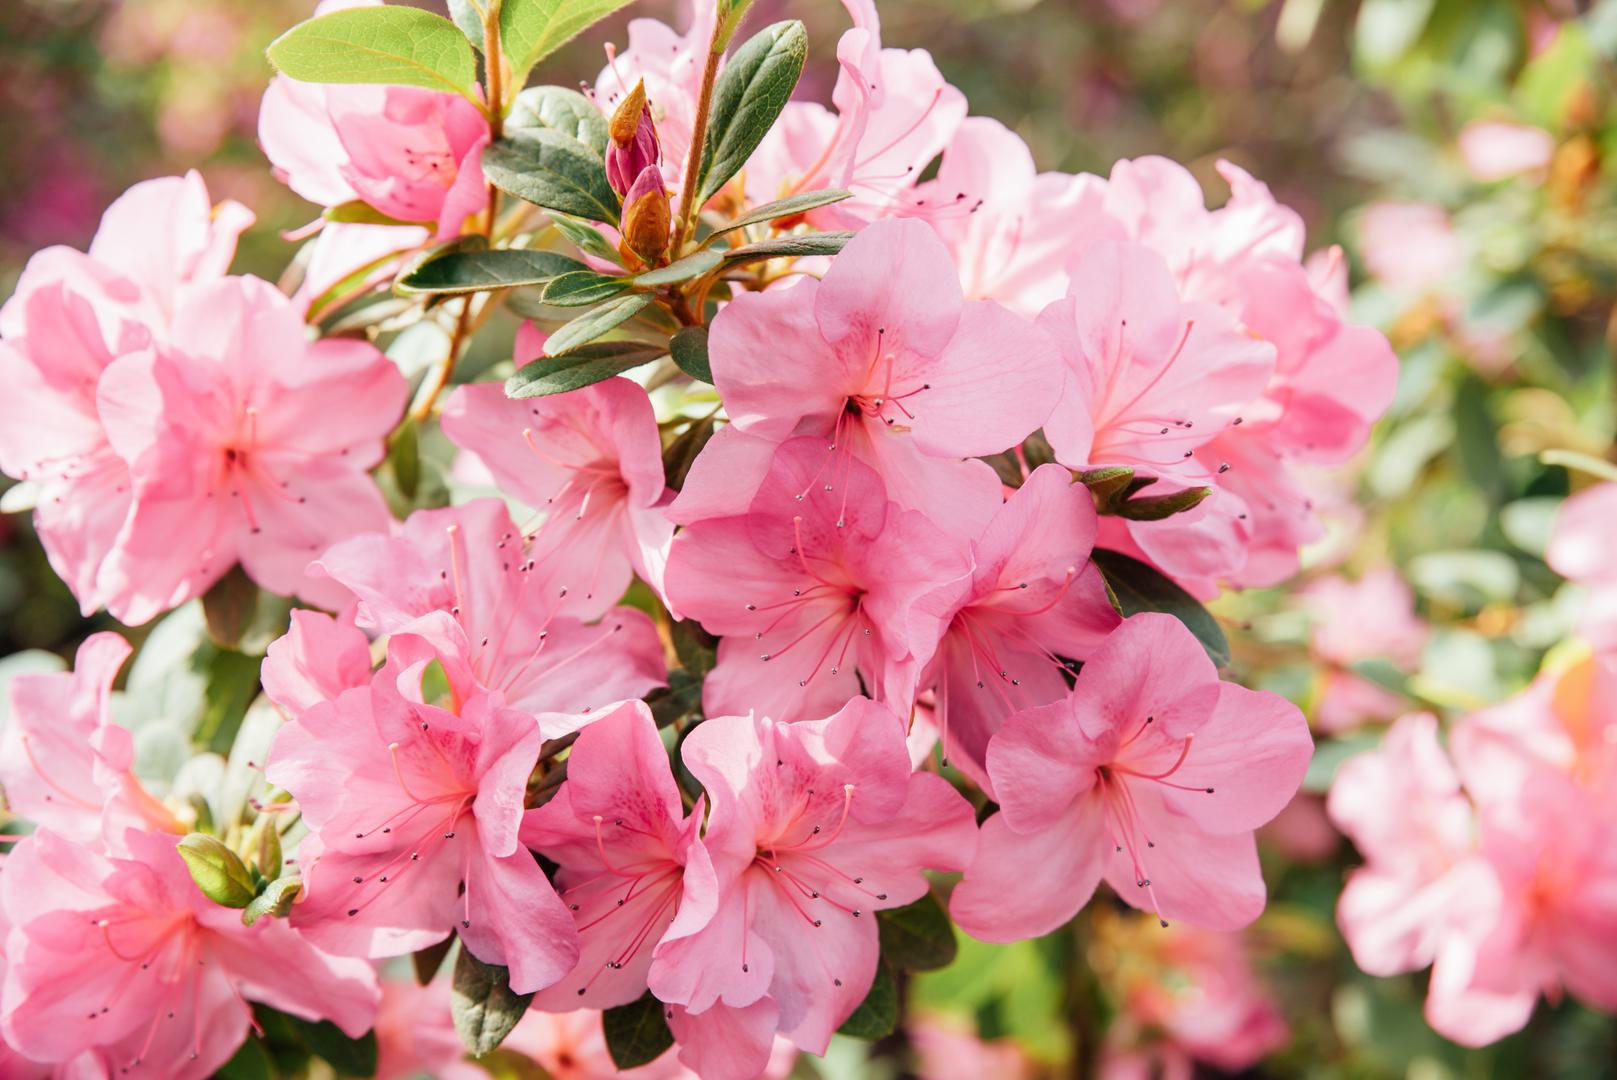 Azaleje i rododendroni: Sadrže 'sivanotoksine', koji su otrovni za pse i mogu uzrokovati povraćanje i otežano disanje da navedemo samo neke od simptoma, međutim treba pojesti veliku količinu ove biljke da bi se javili teži simptomi.